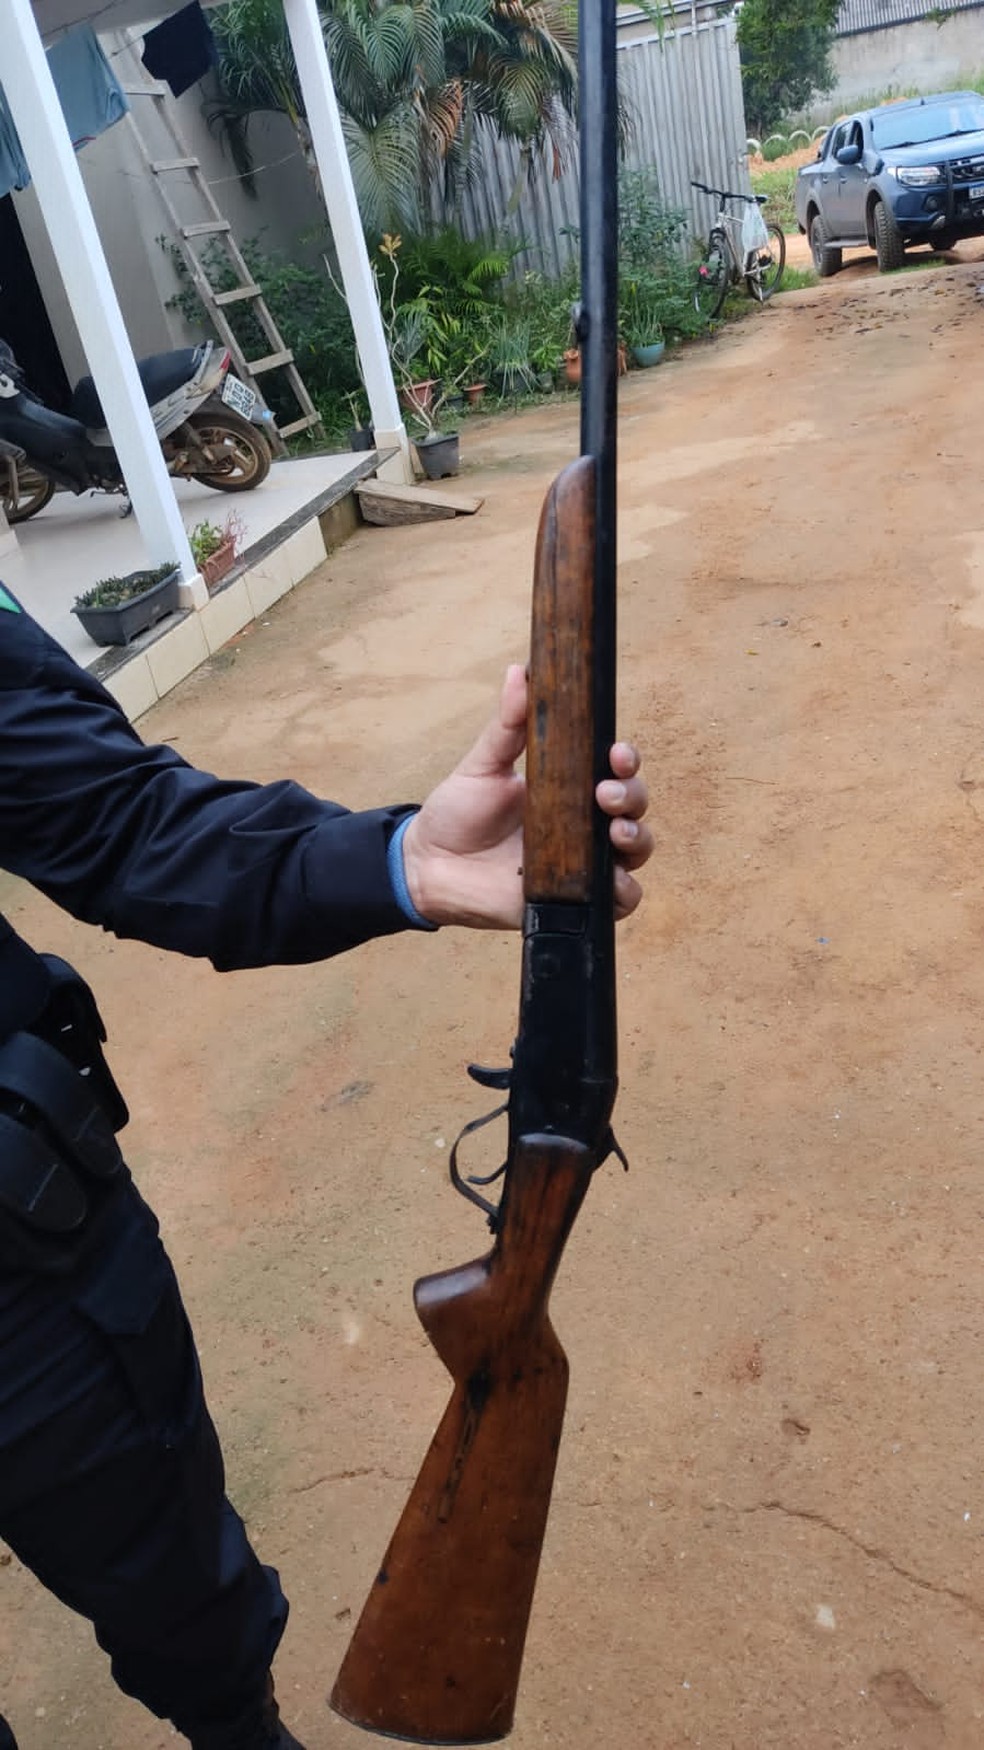 Armas foram apreendidas durante a operação — Foto: PF/Divulgação